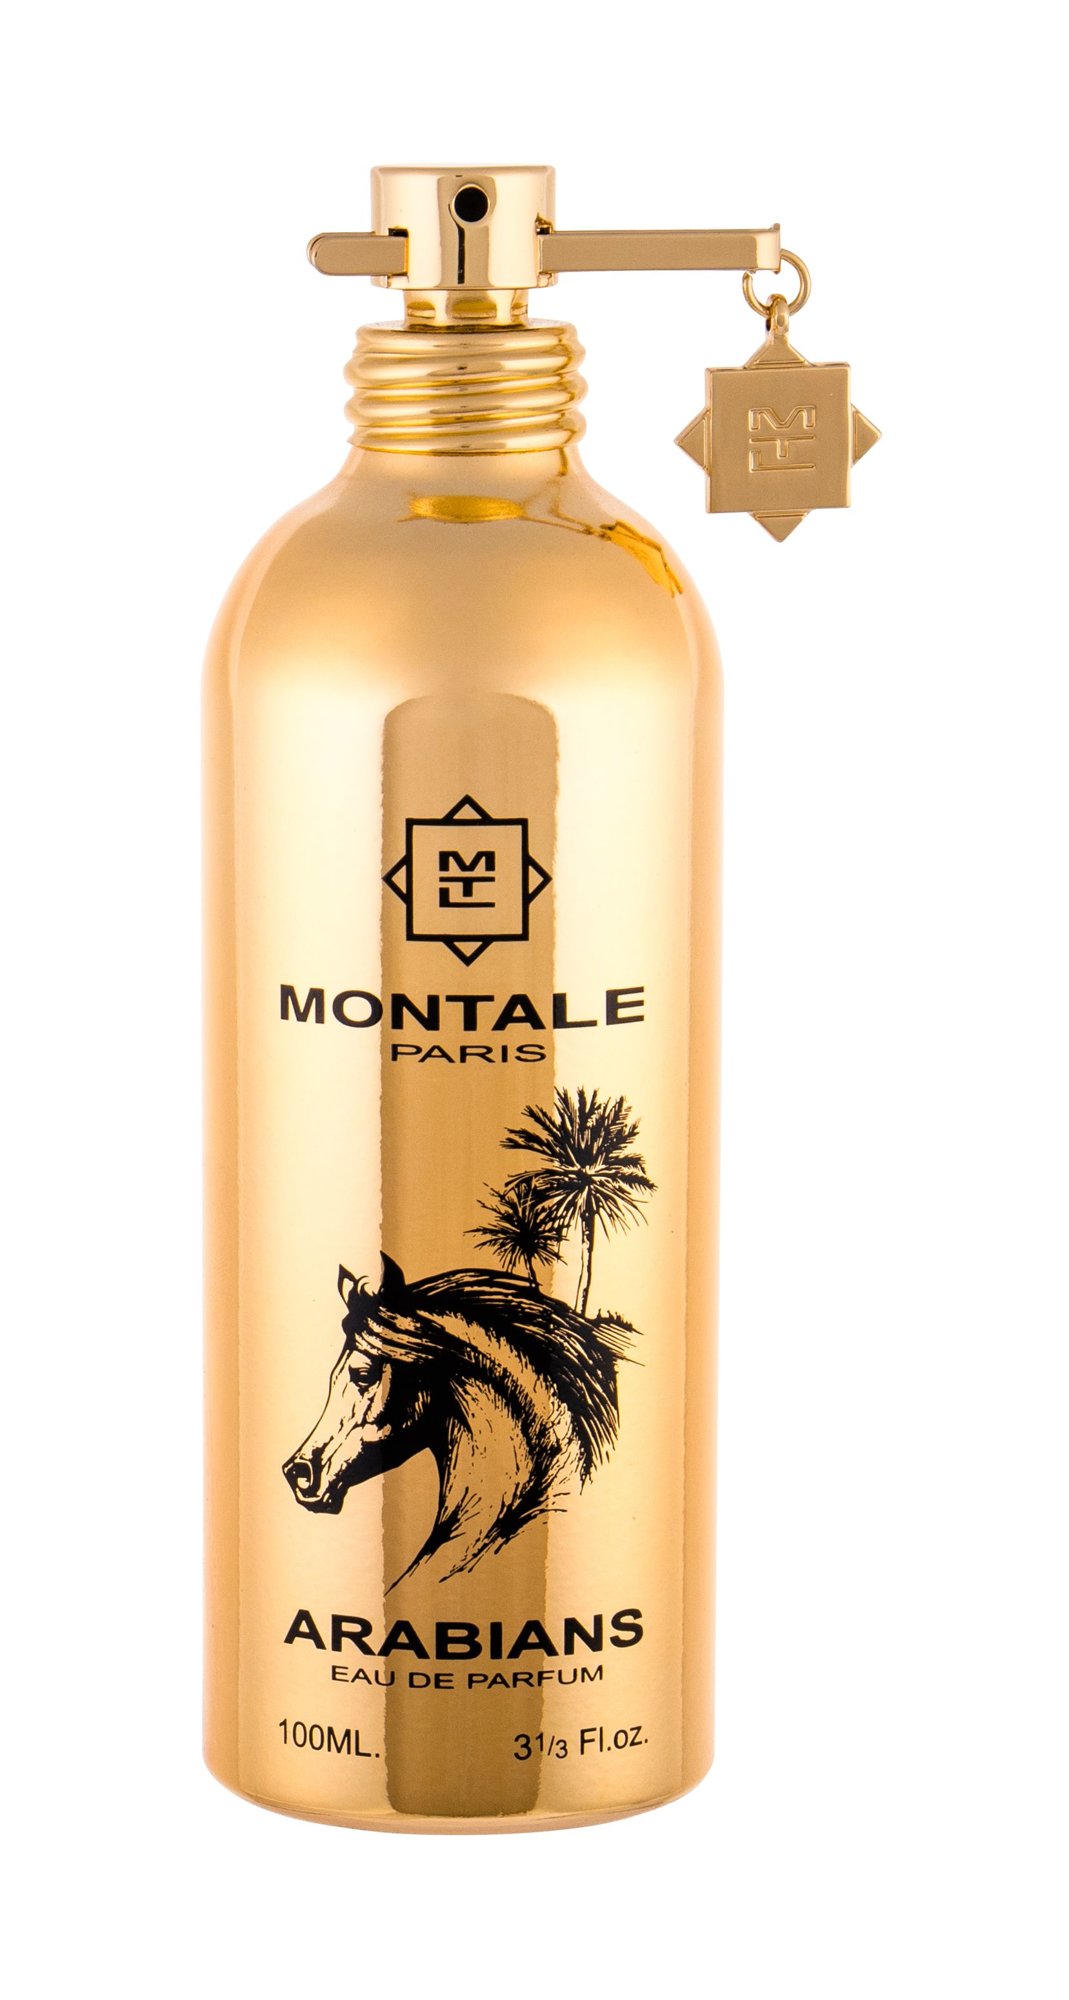 Montale Paris Arabians 15 ml NIŠINIAI kvepalų mėginukas (atomaizeris) Unisex EDP